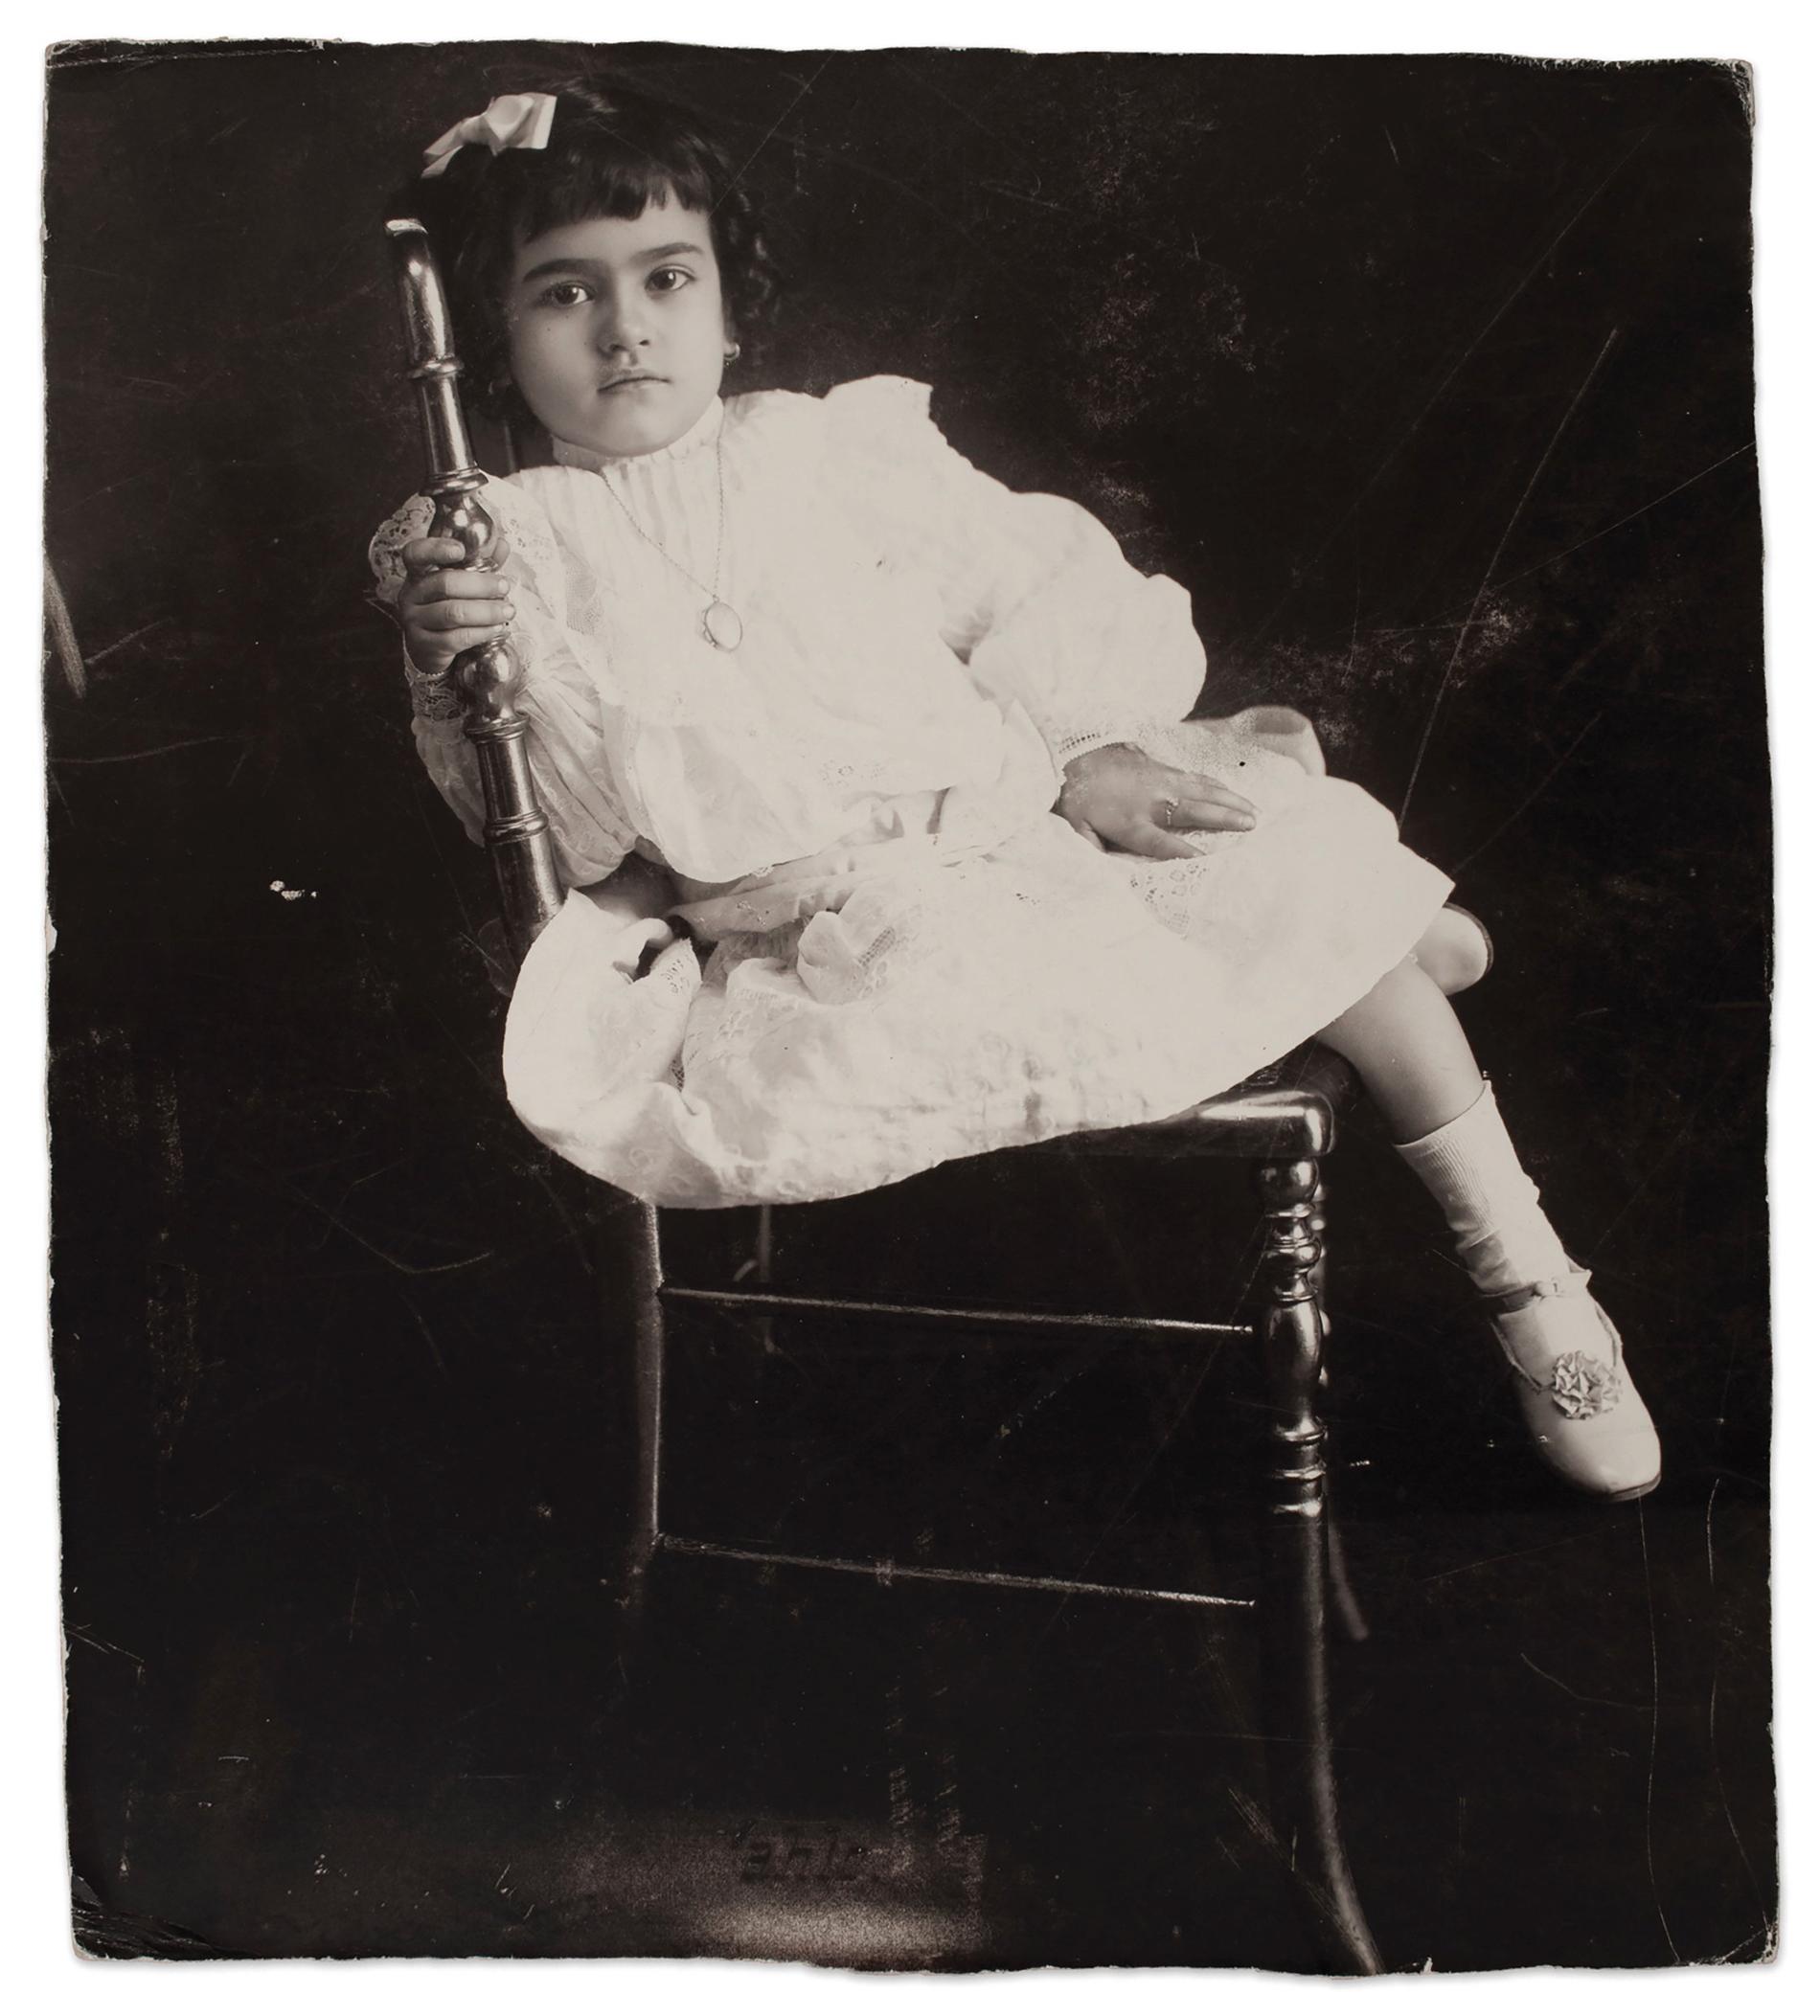 Frida vid 5 års ålder, 1912. Pressbild.